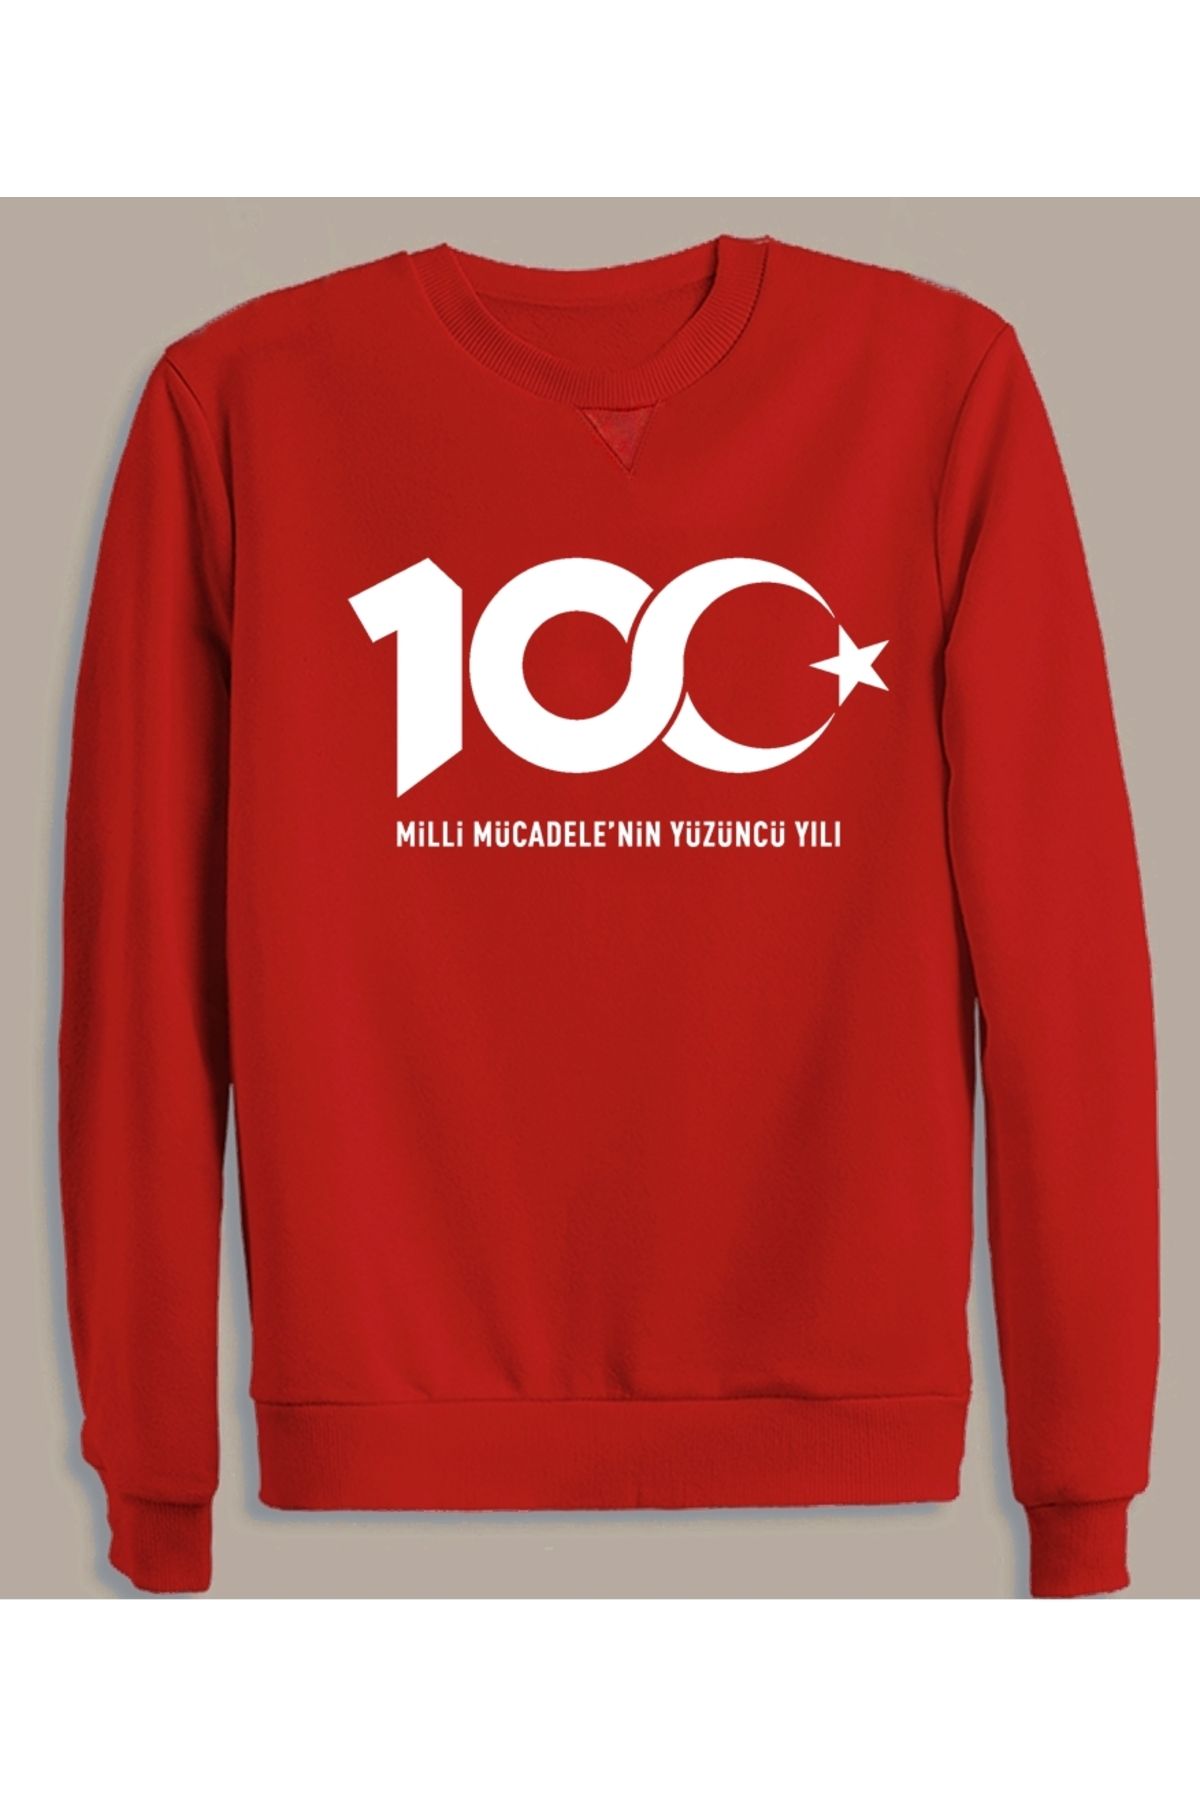 Baskılı Efendioğlu Kırmızı 29 Ekim Trendyol Sweatshirt Design - Pamuklu Fiyatı, Erkek 100.yıl Logo Türkiye Yorumları